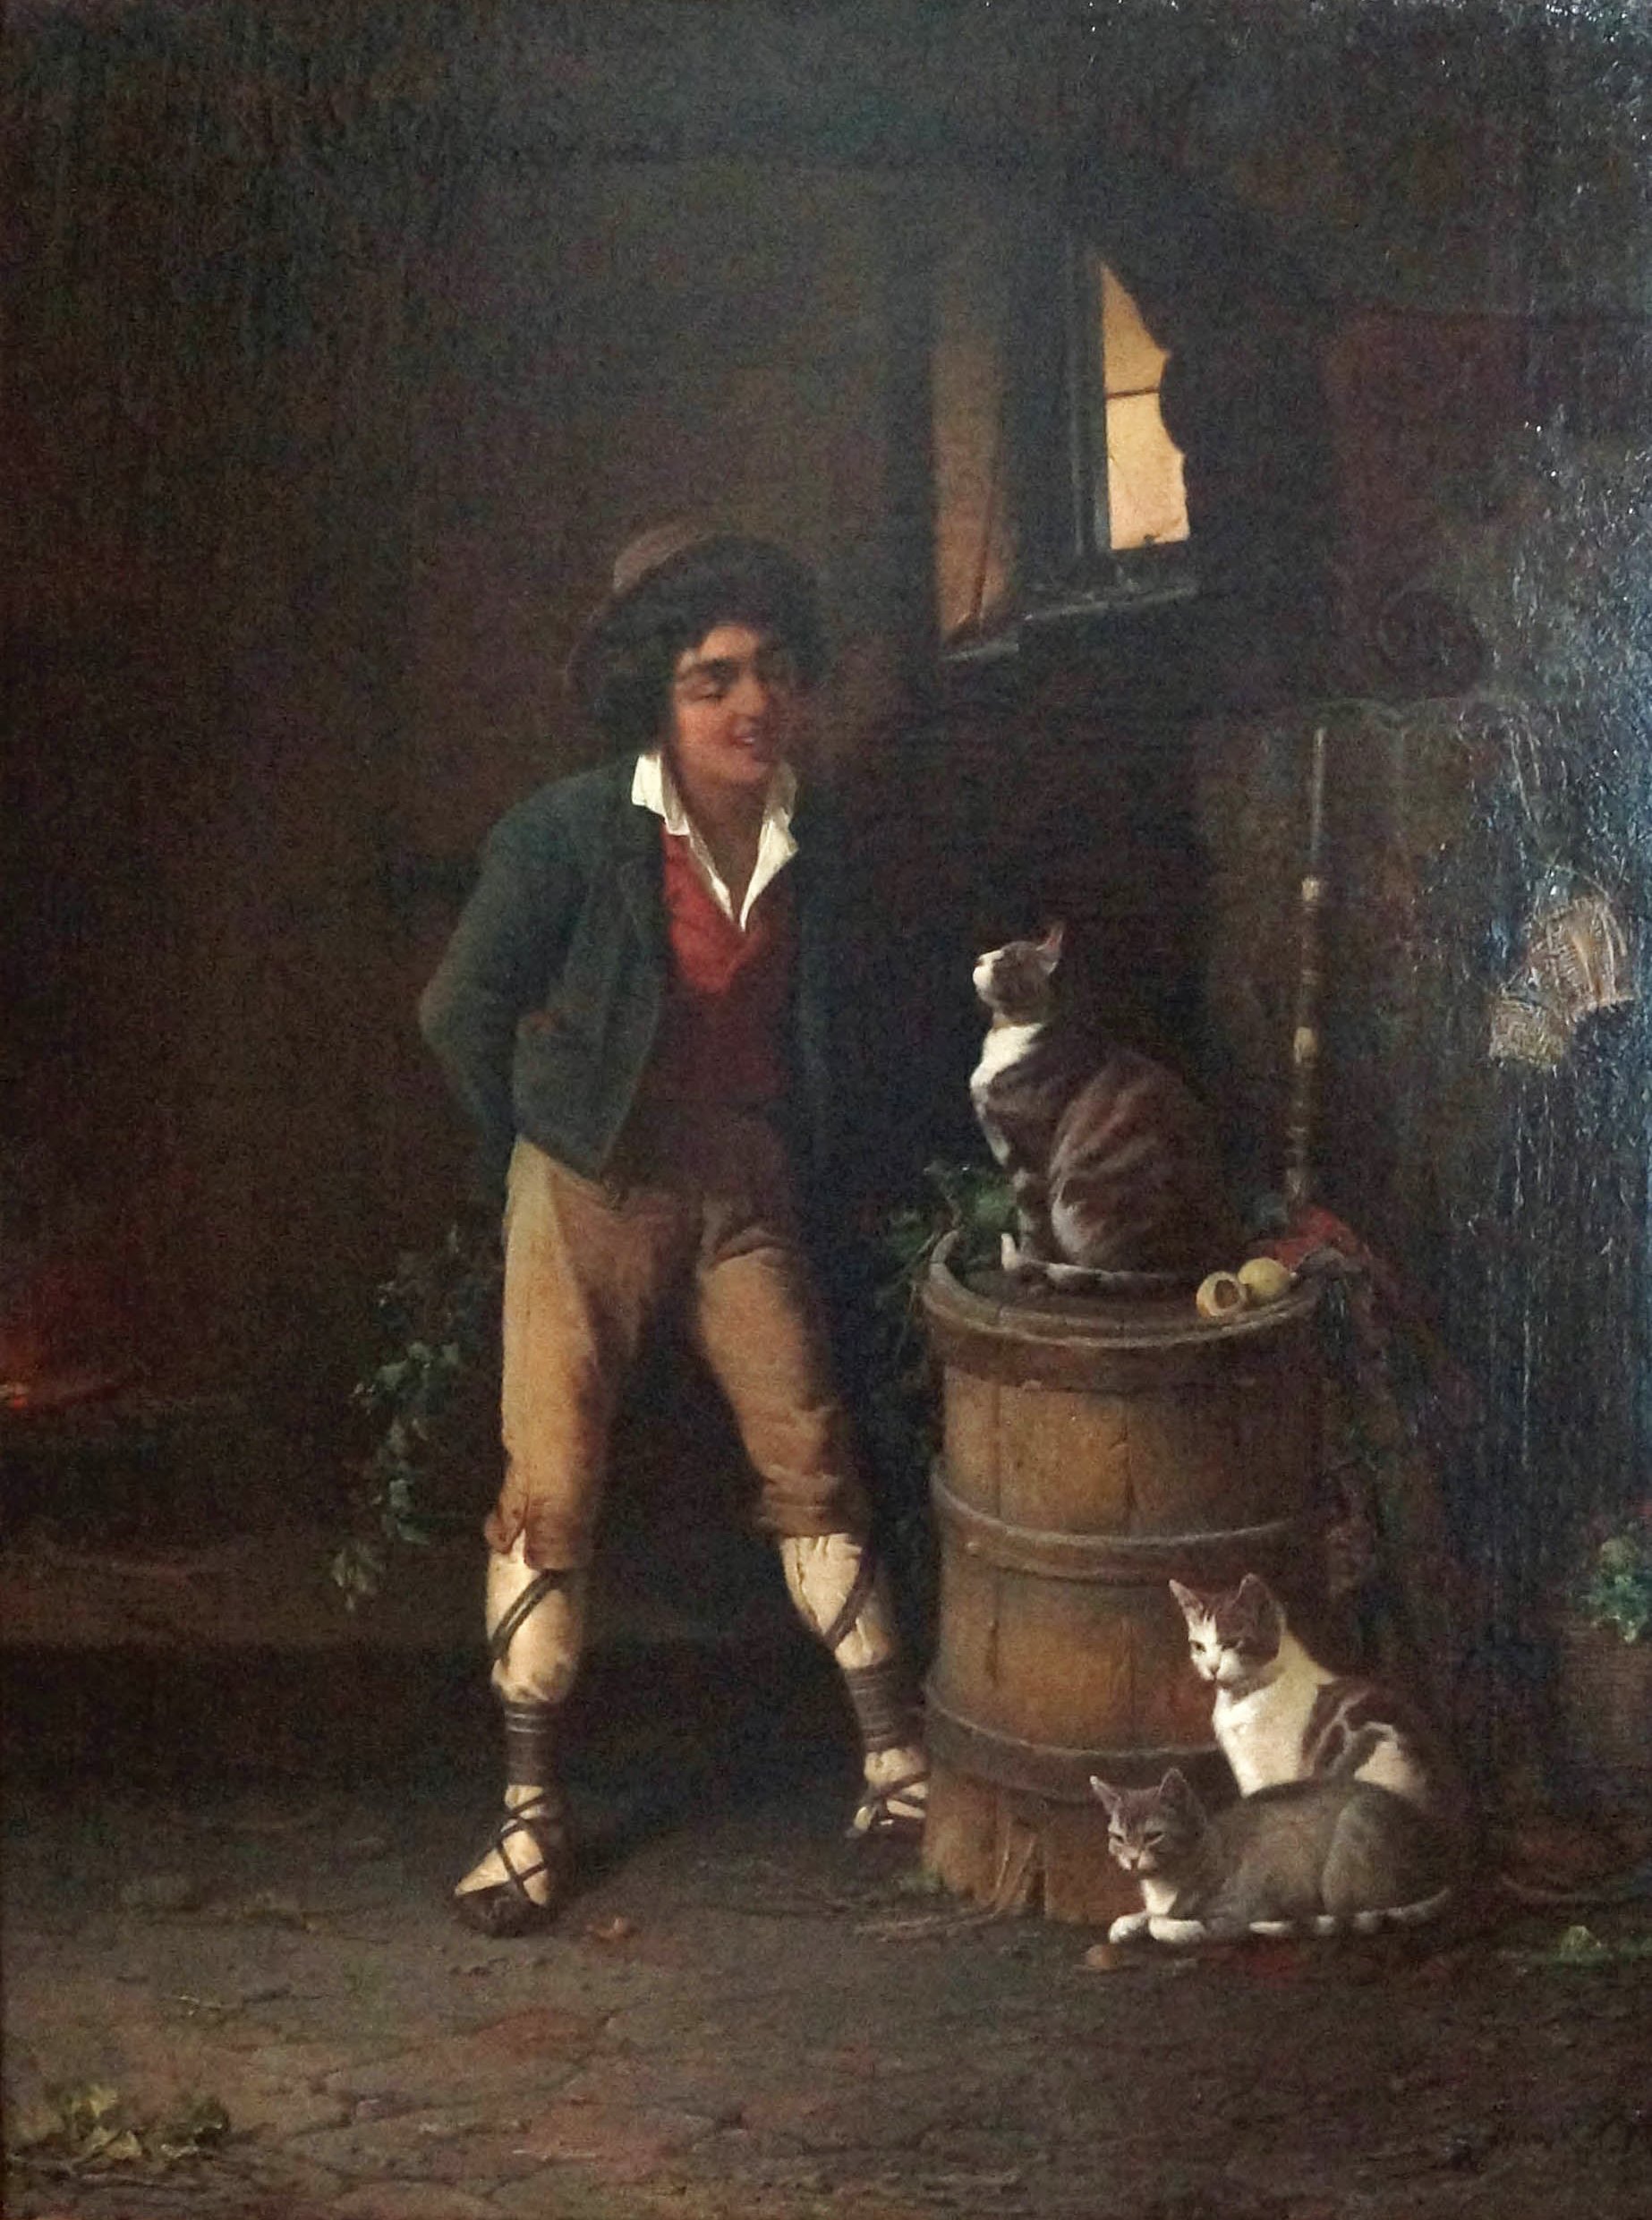 А. А. Риццони. "Мальчик с кошкой". 1881. Художественный музей, Витебск.